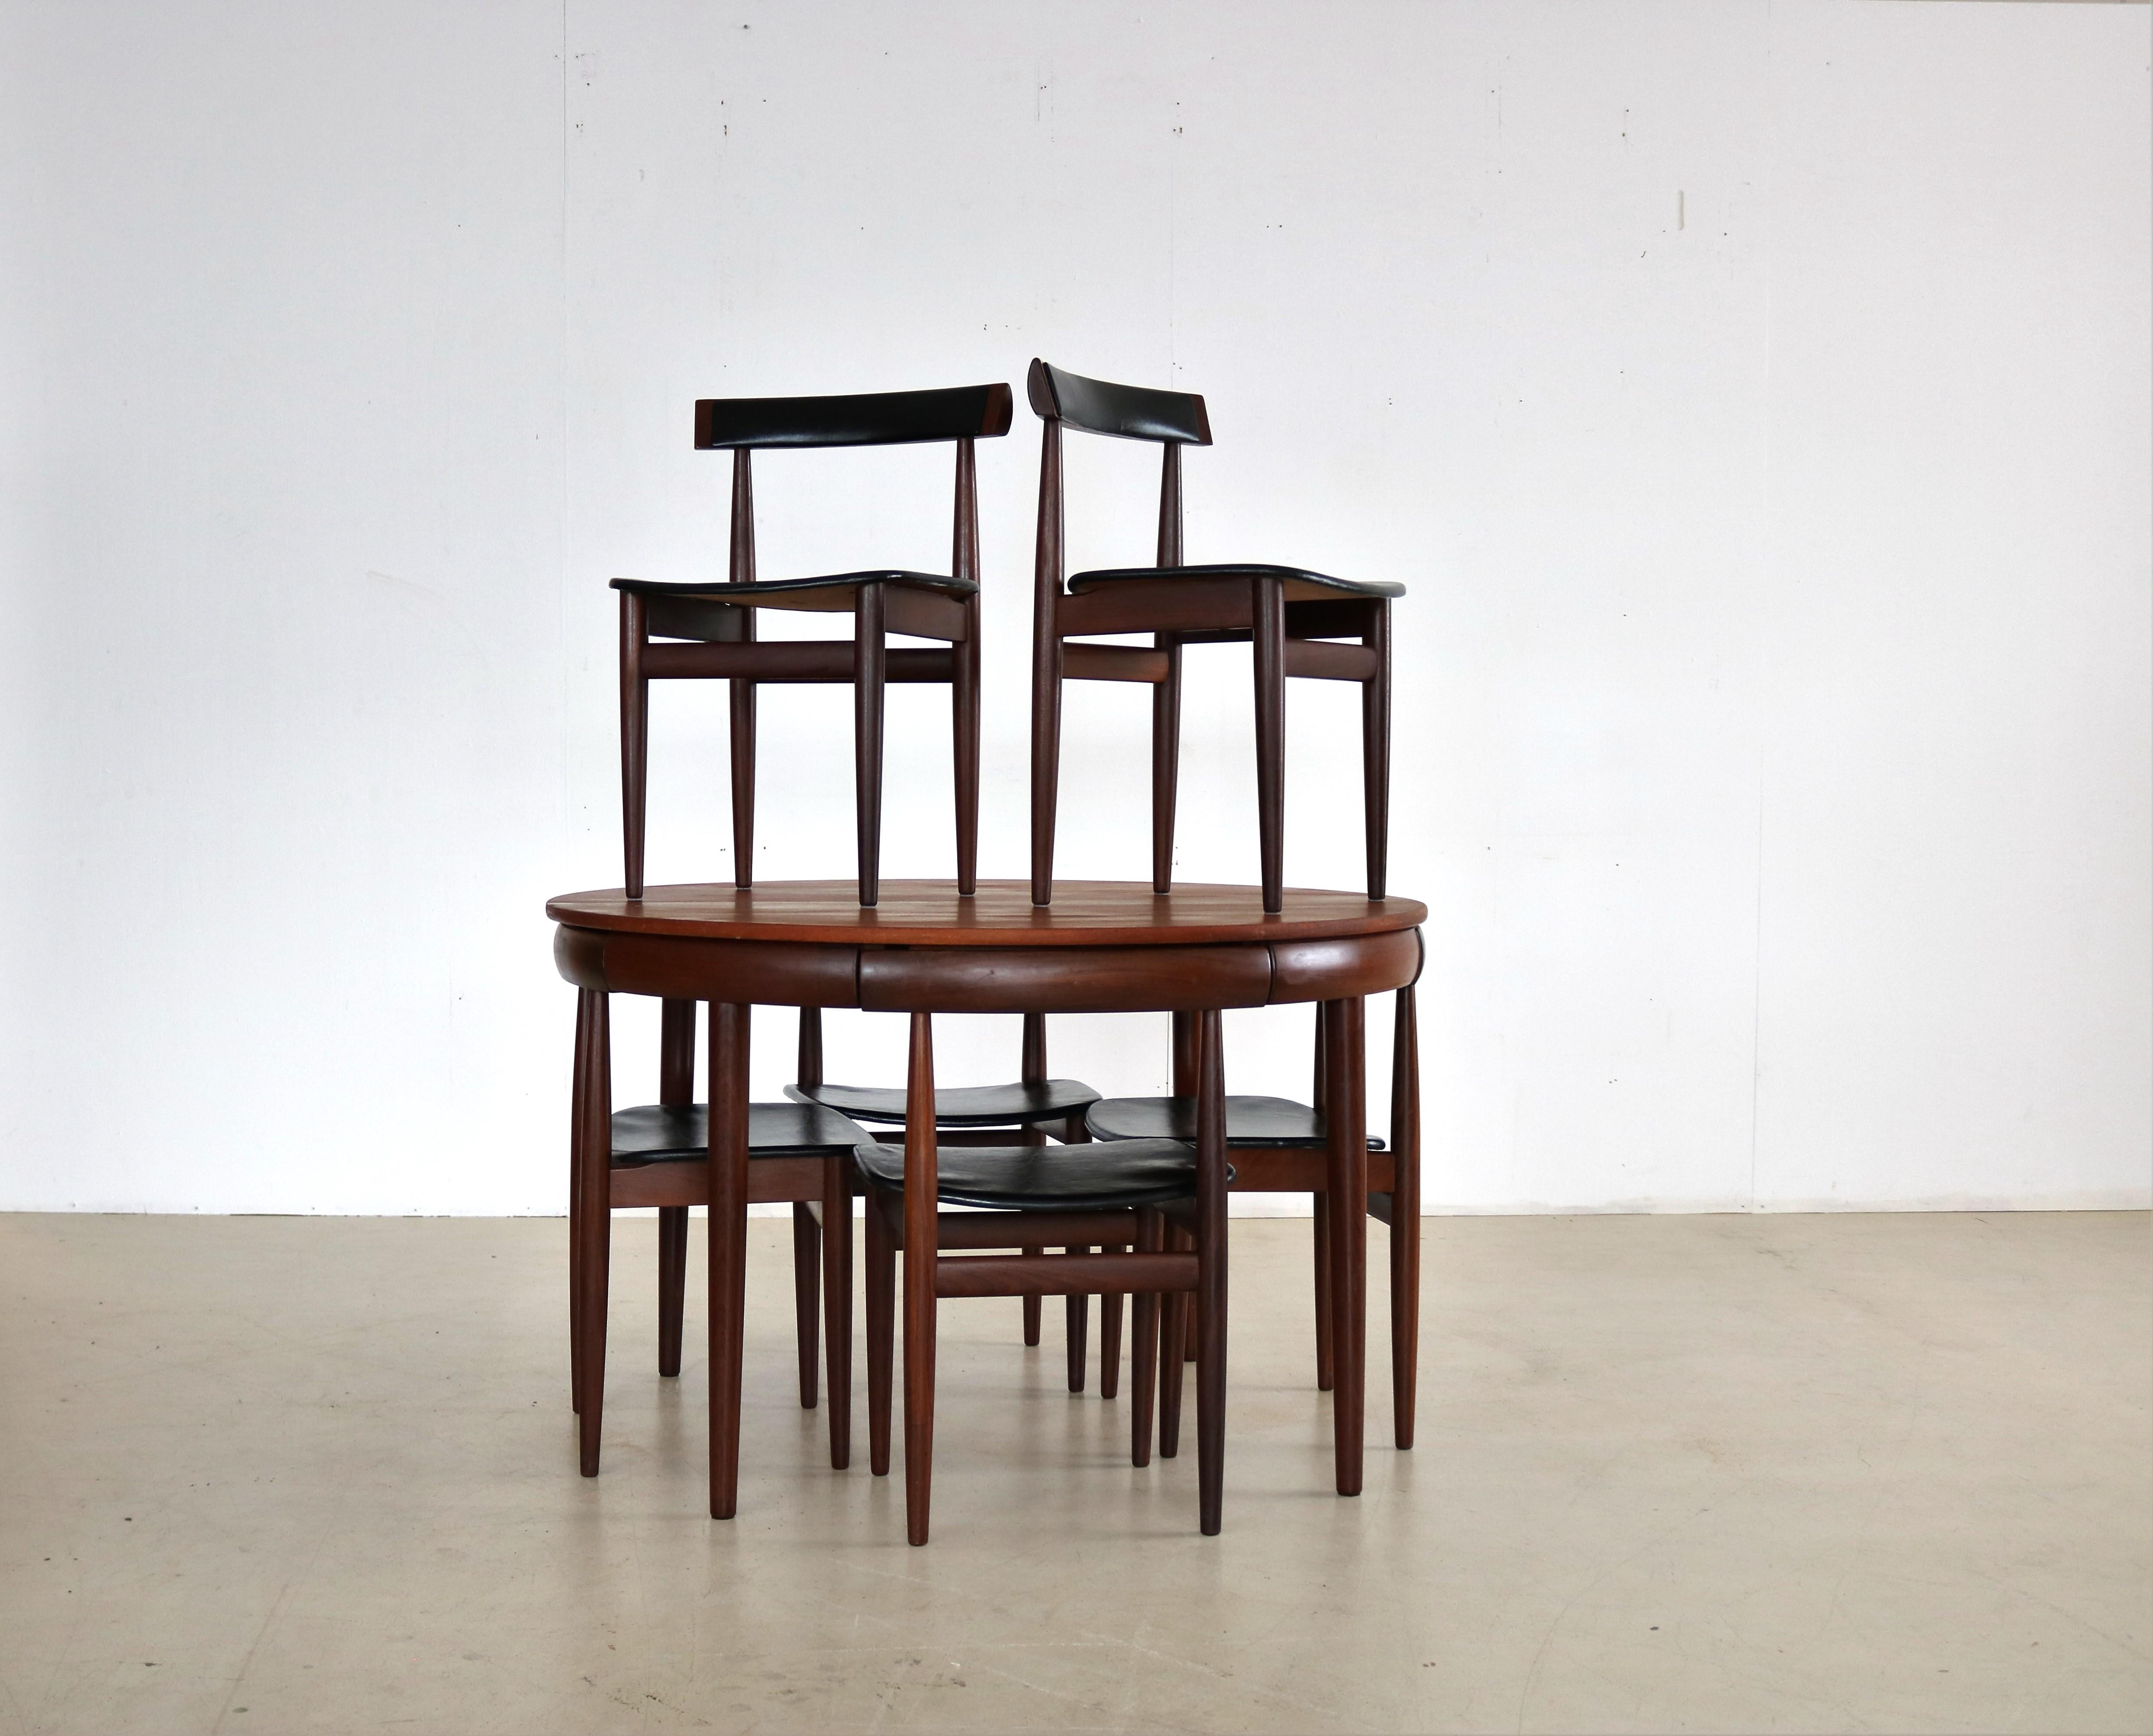 Vintage-Esszimmergarnitur  Tabelle  Stühle  Fremde Rojle  Dänisches Design

Klassische Esszimmereinrichtung aus den 1960er Jahren, entworfen von Hans Olsen für Frem Rojle. Elegantes Design, bei dem die Stühle 